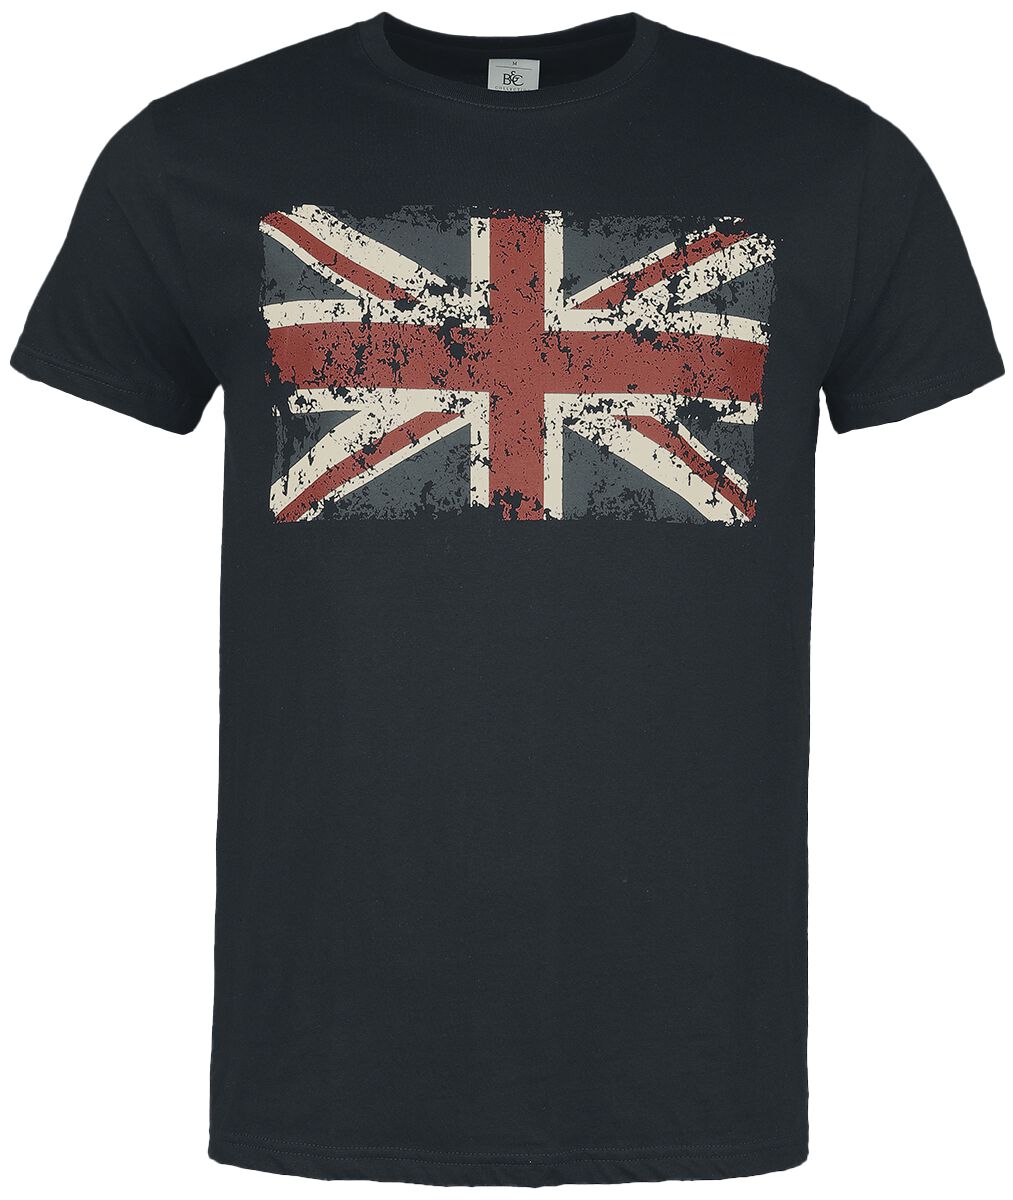 Gasoline Bandit - Rockabilly T-Shirt - Union Jack - S bis 4XL - für Männer - Größe M - schwarz